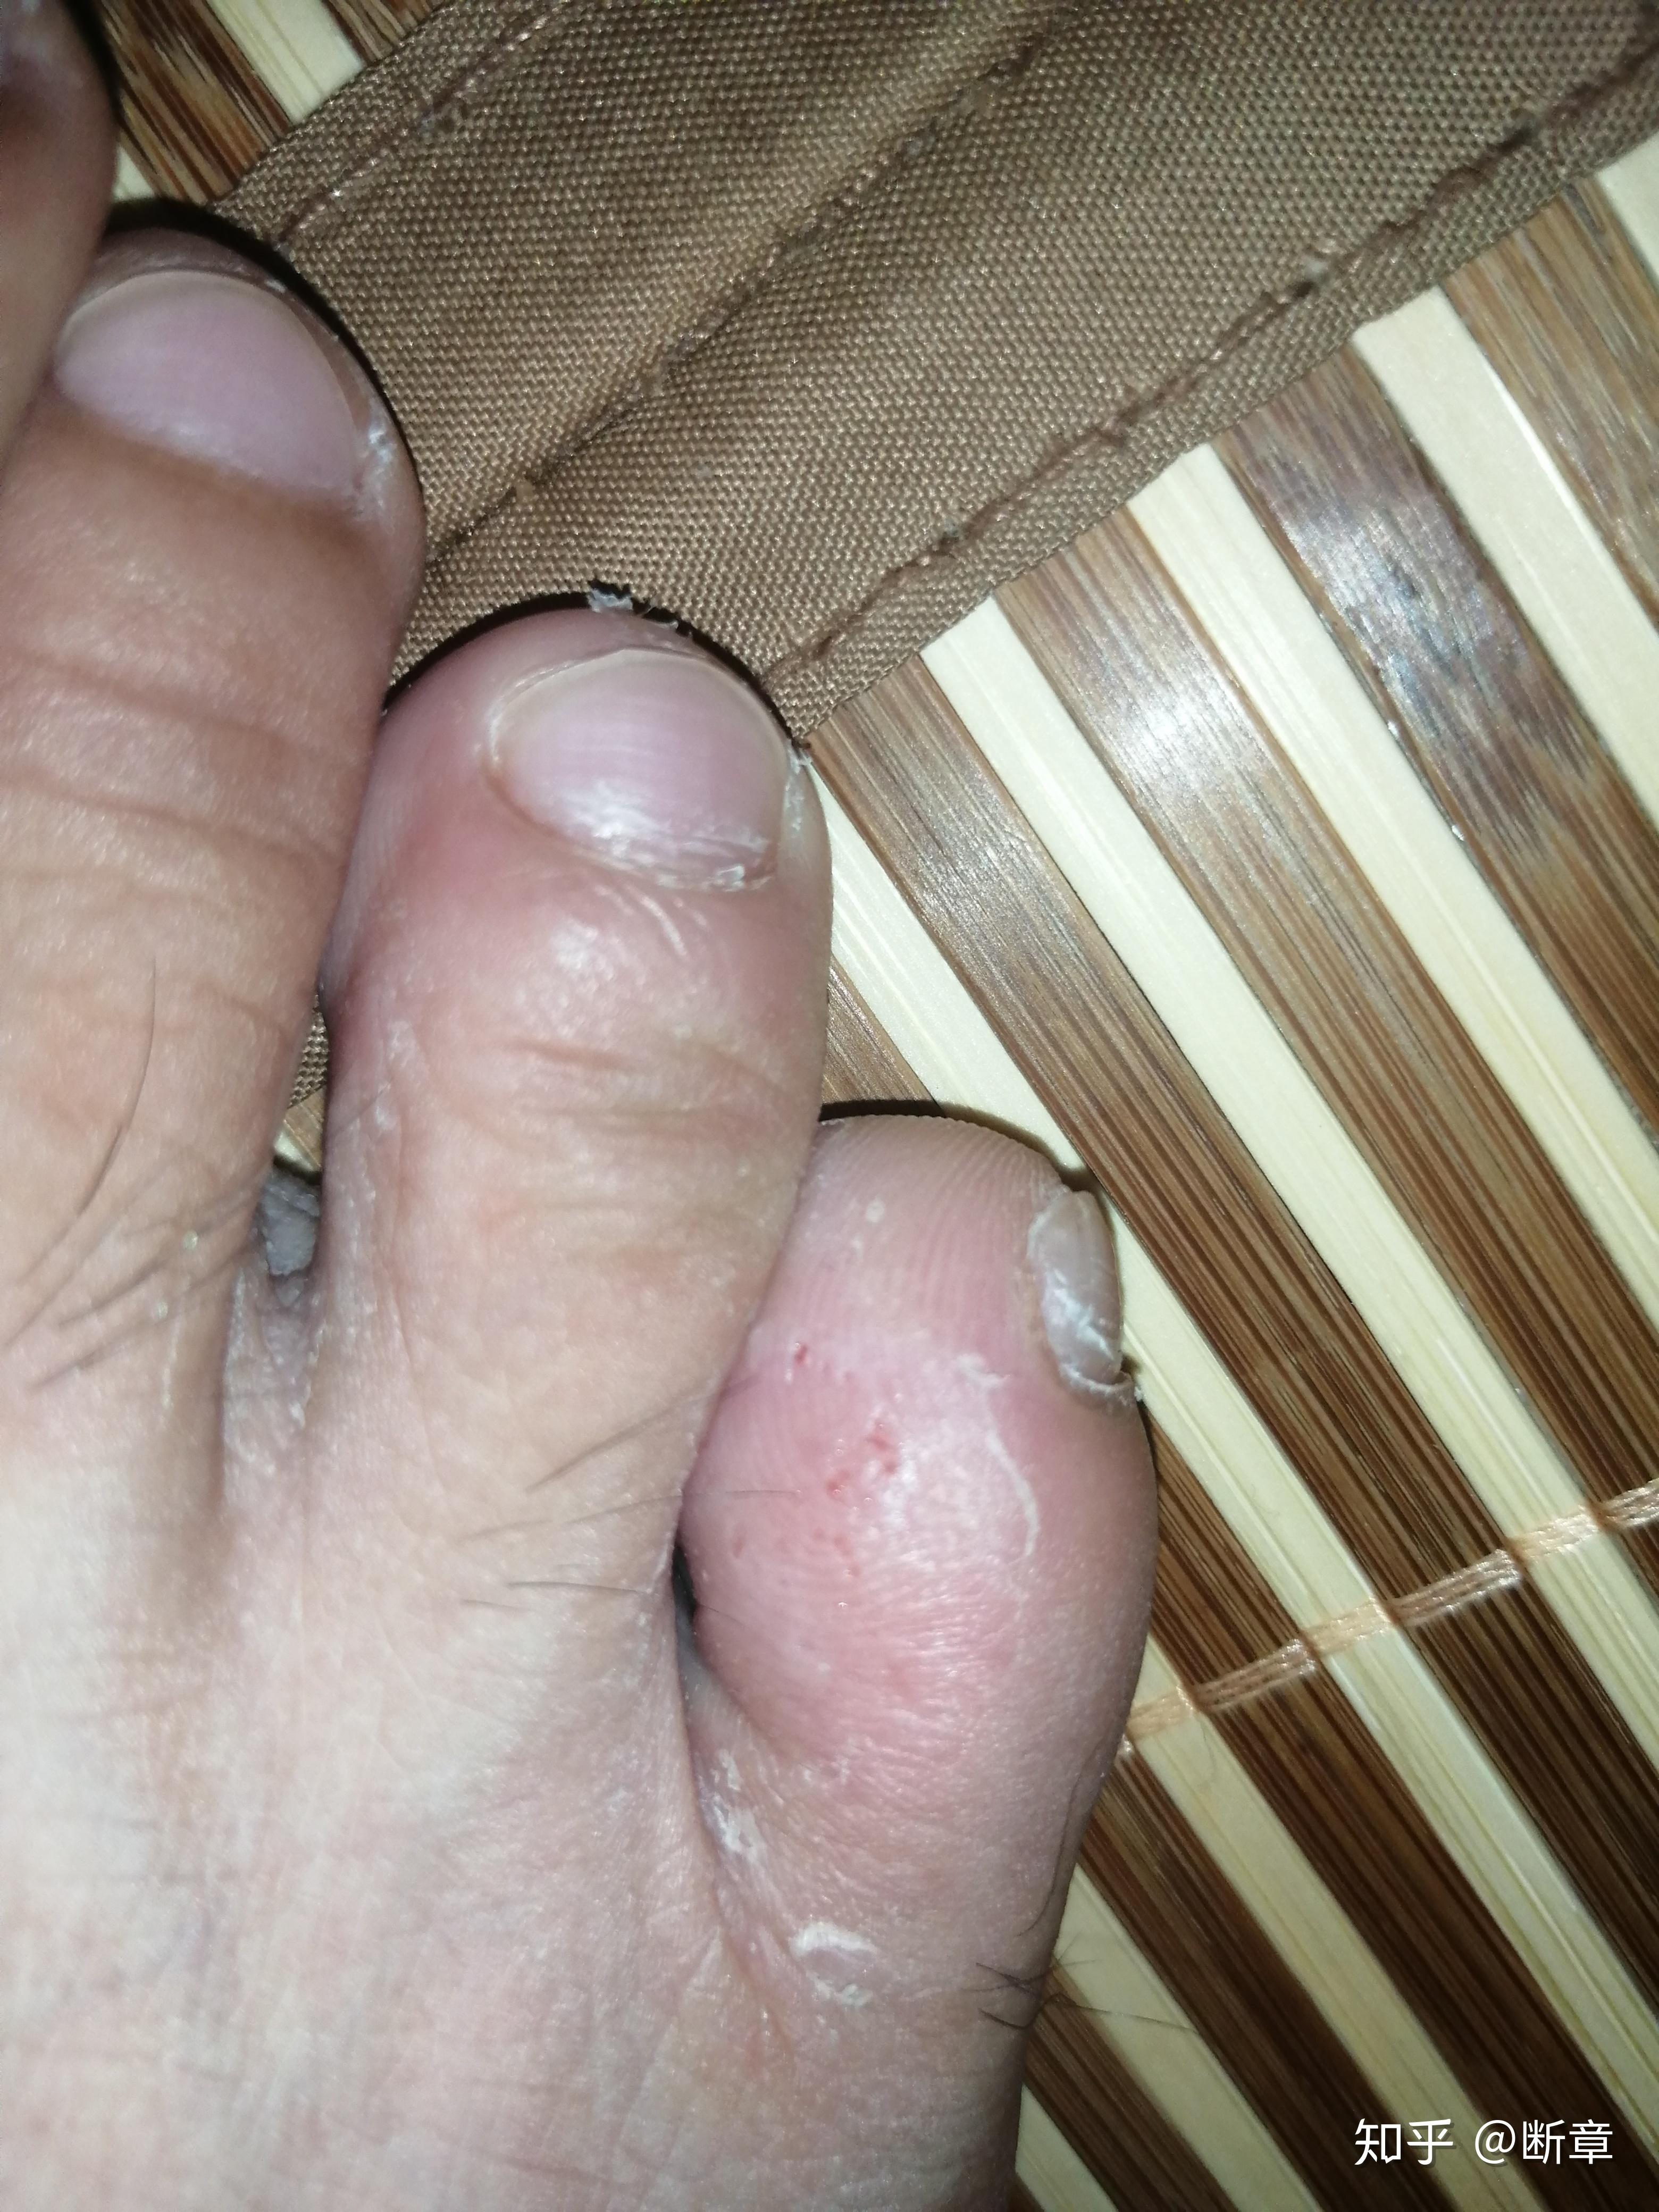 我的脚趾最近很痒,是细菌吗?应该怎样治疗?